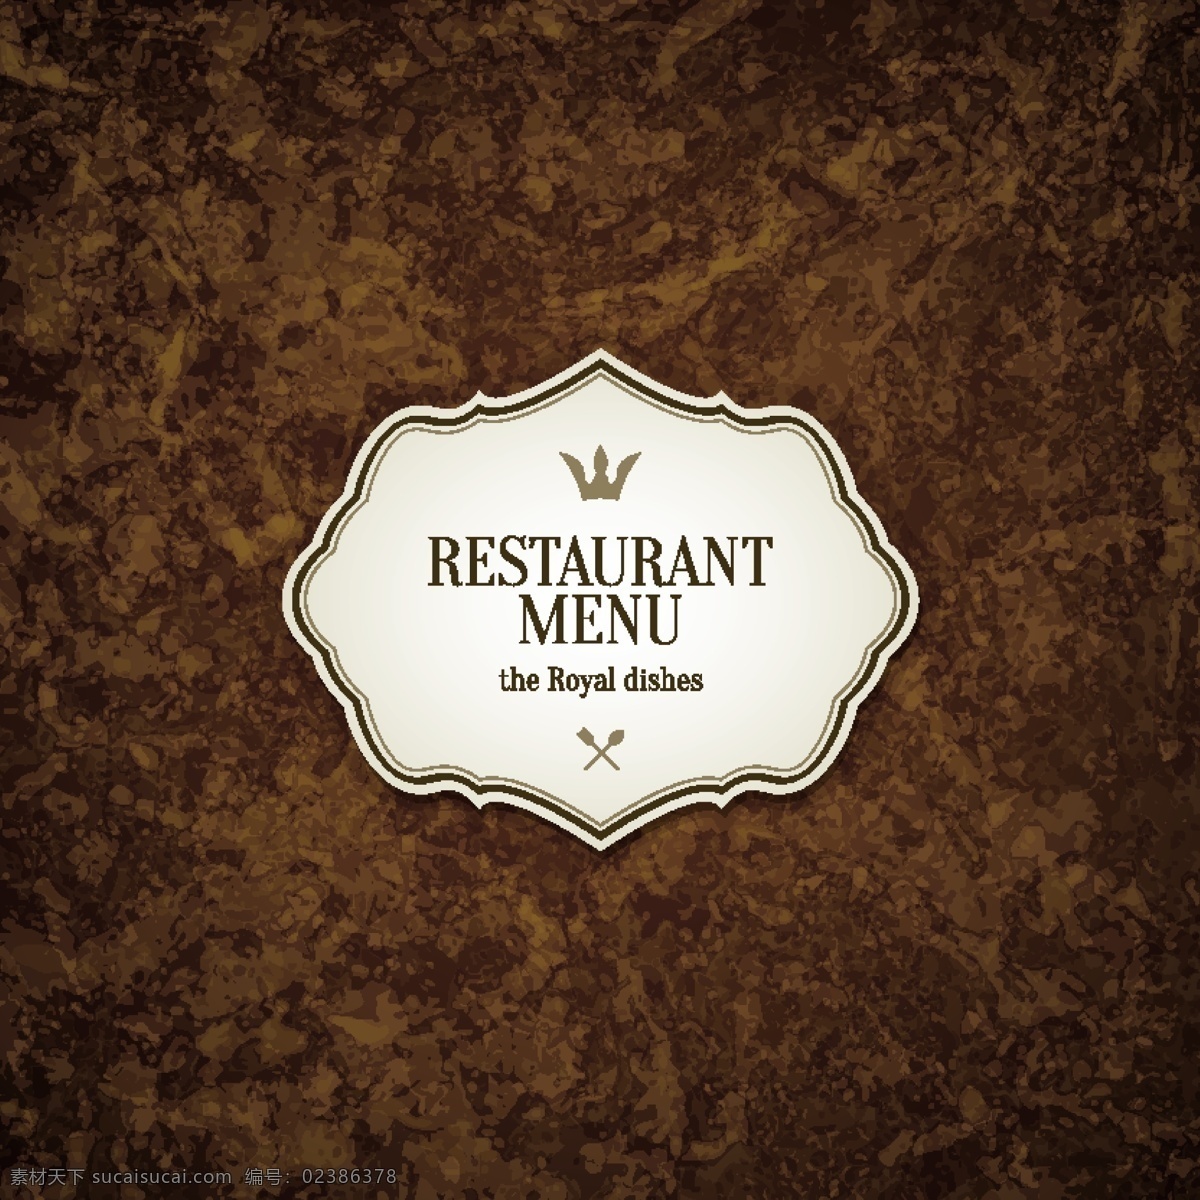 创意 菜单 矢量 餐厅 餐饮 厨师帽 封面设计 古典 花纹 华丽 矢量图 西餐 其他矢量图